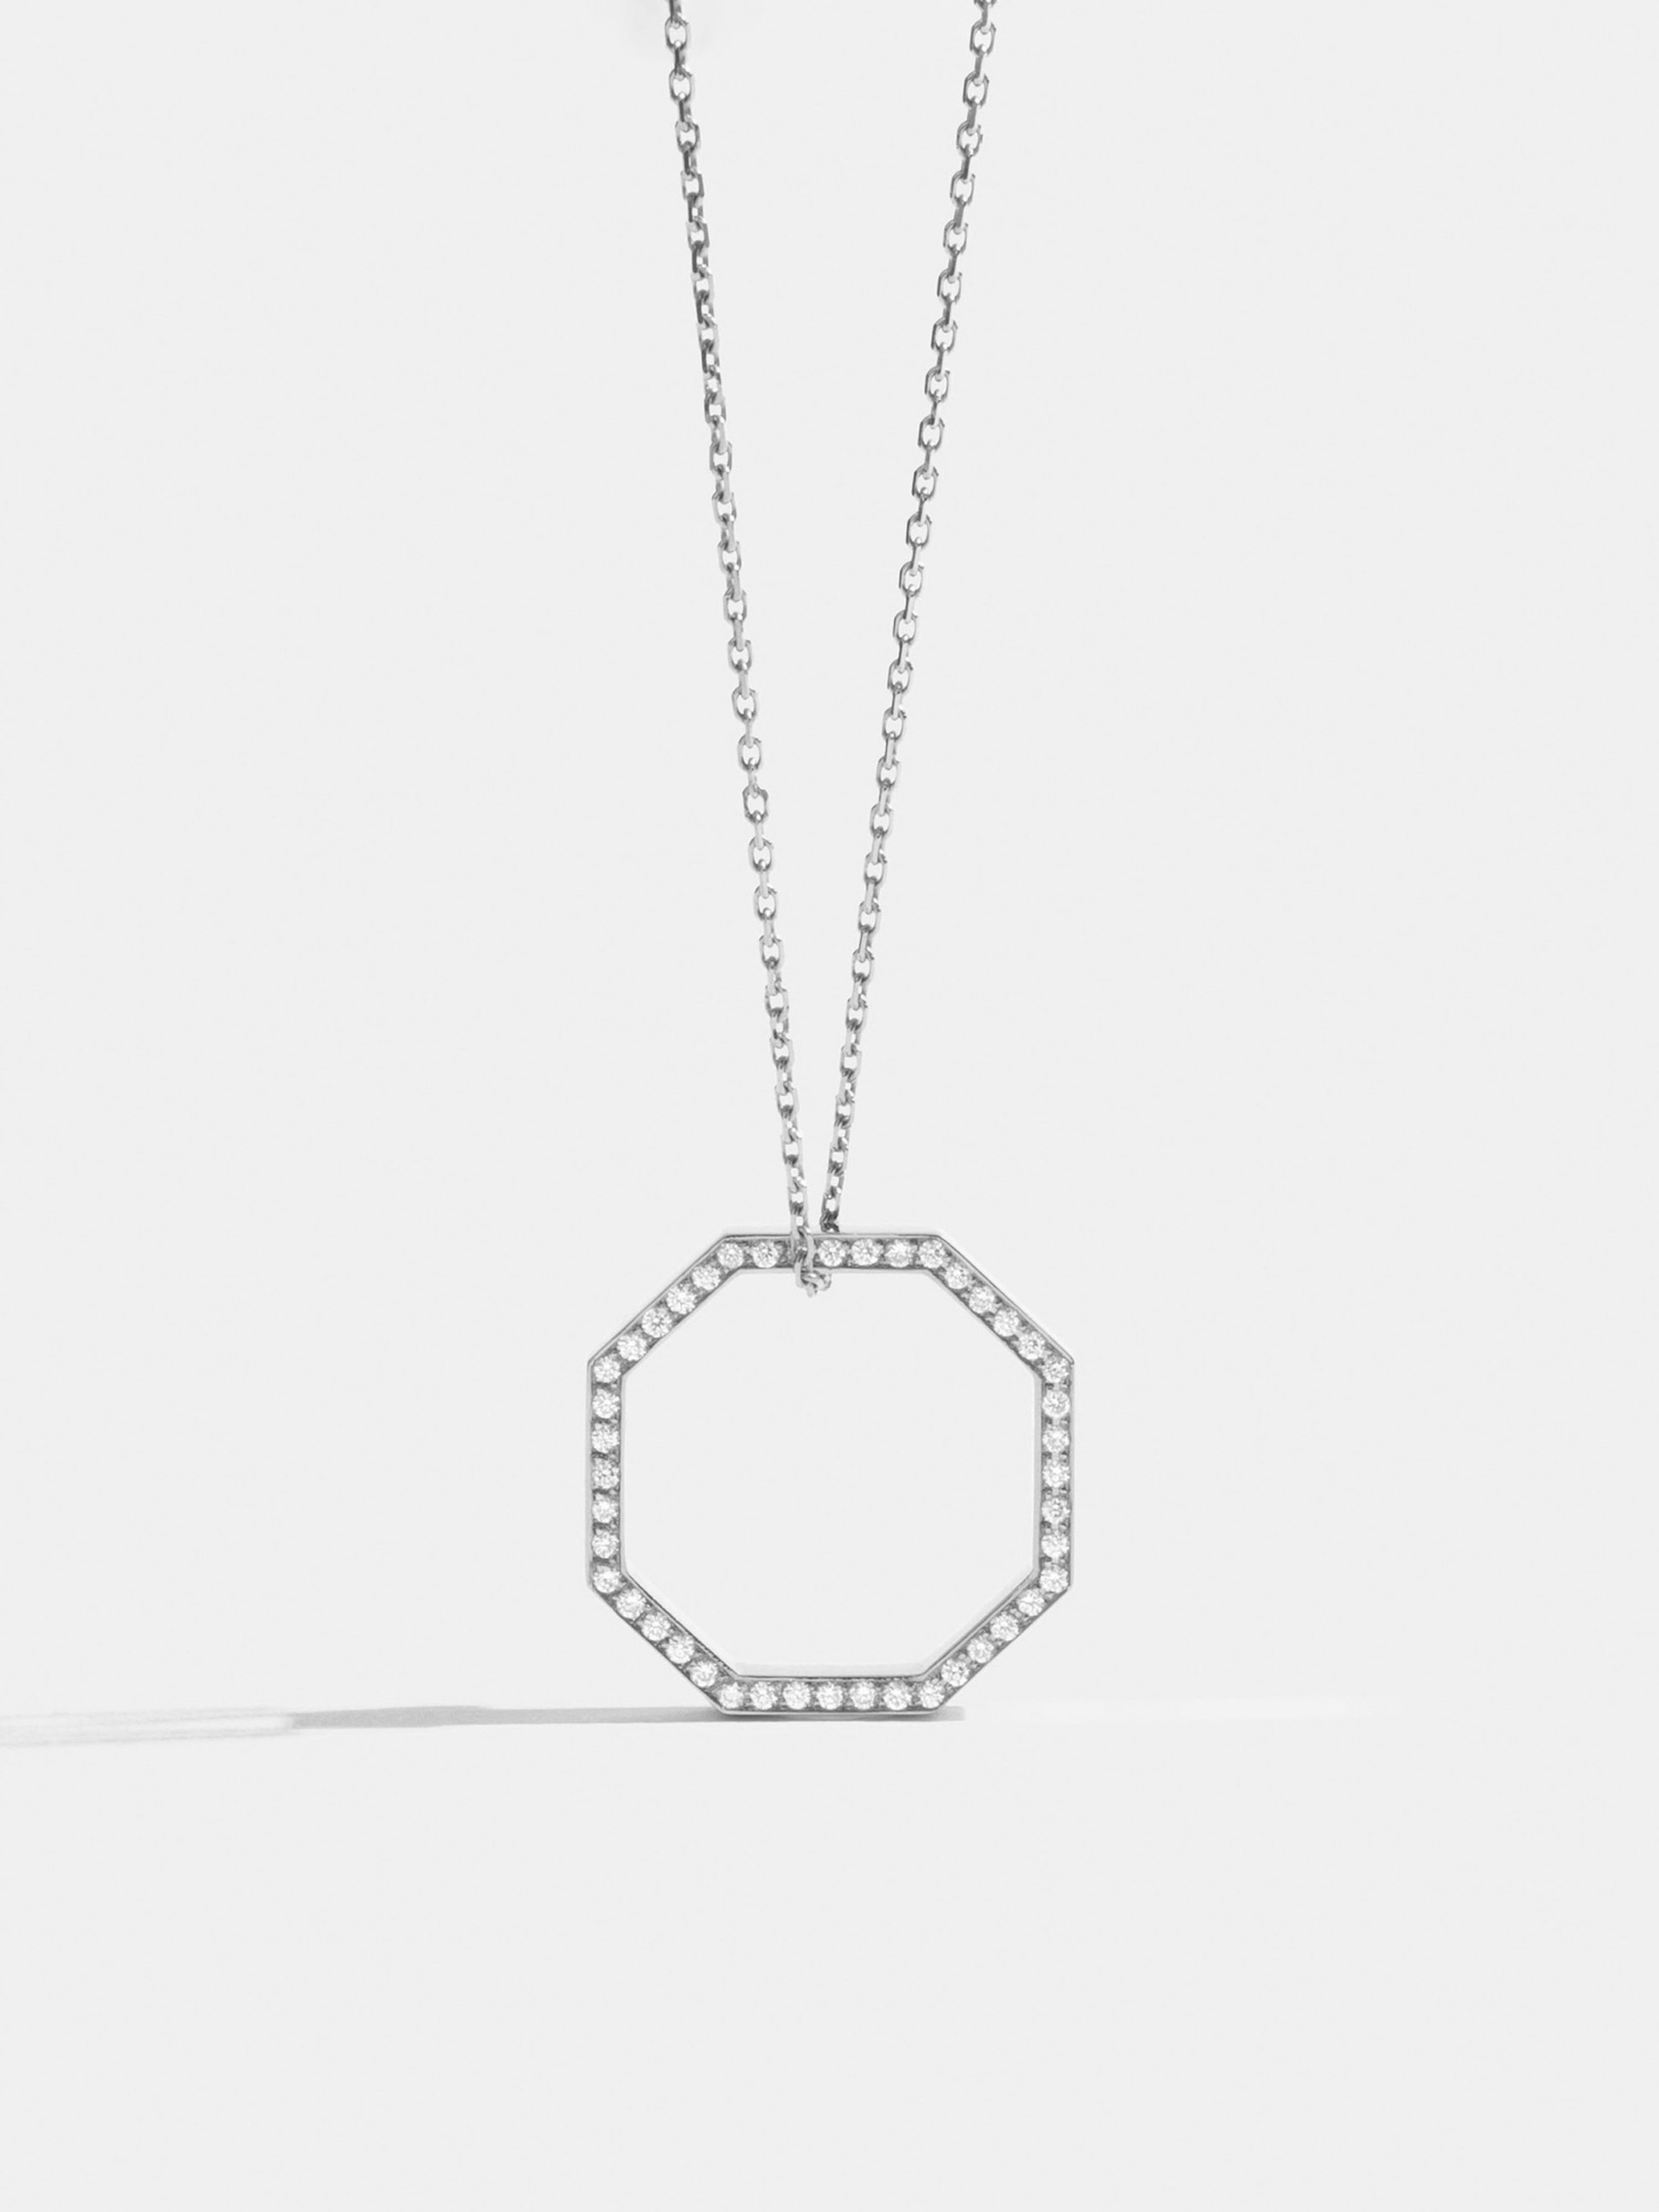 Sautoir Octogone de 18mm en Or blanc éthique 18 carats certifié Fairmined et diamants de synthèse, sur chaîne de 88cm